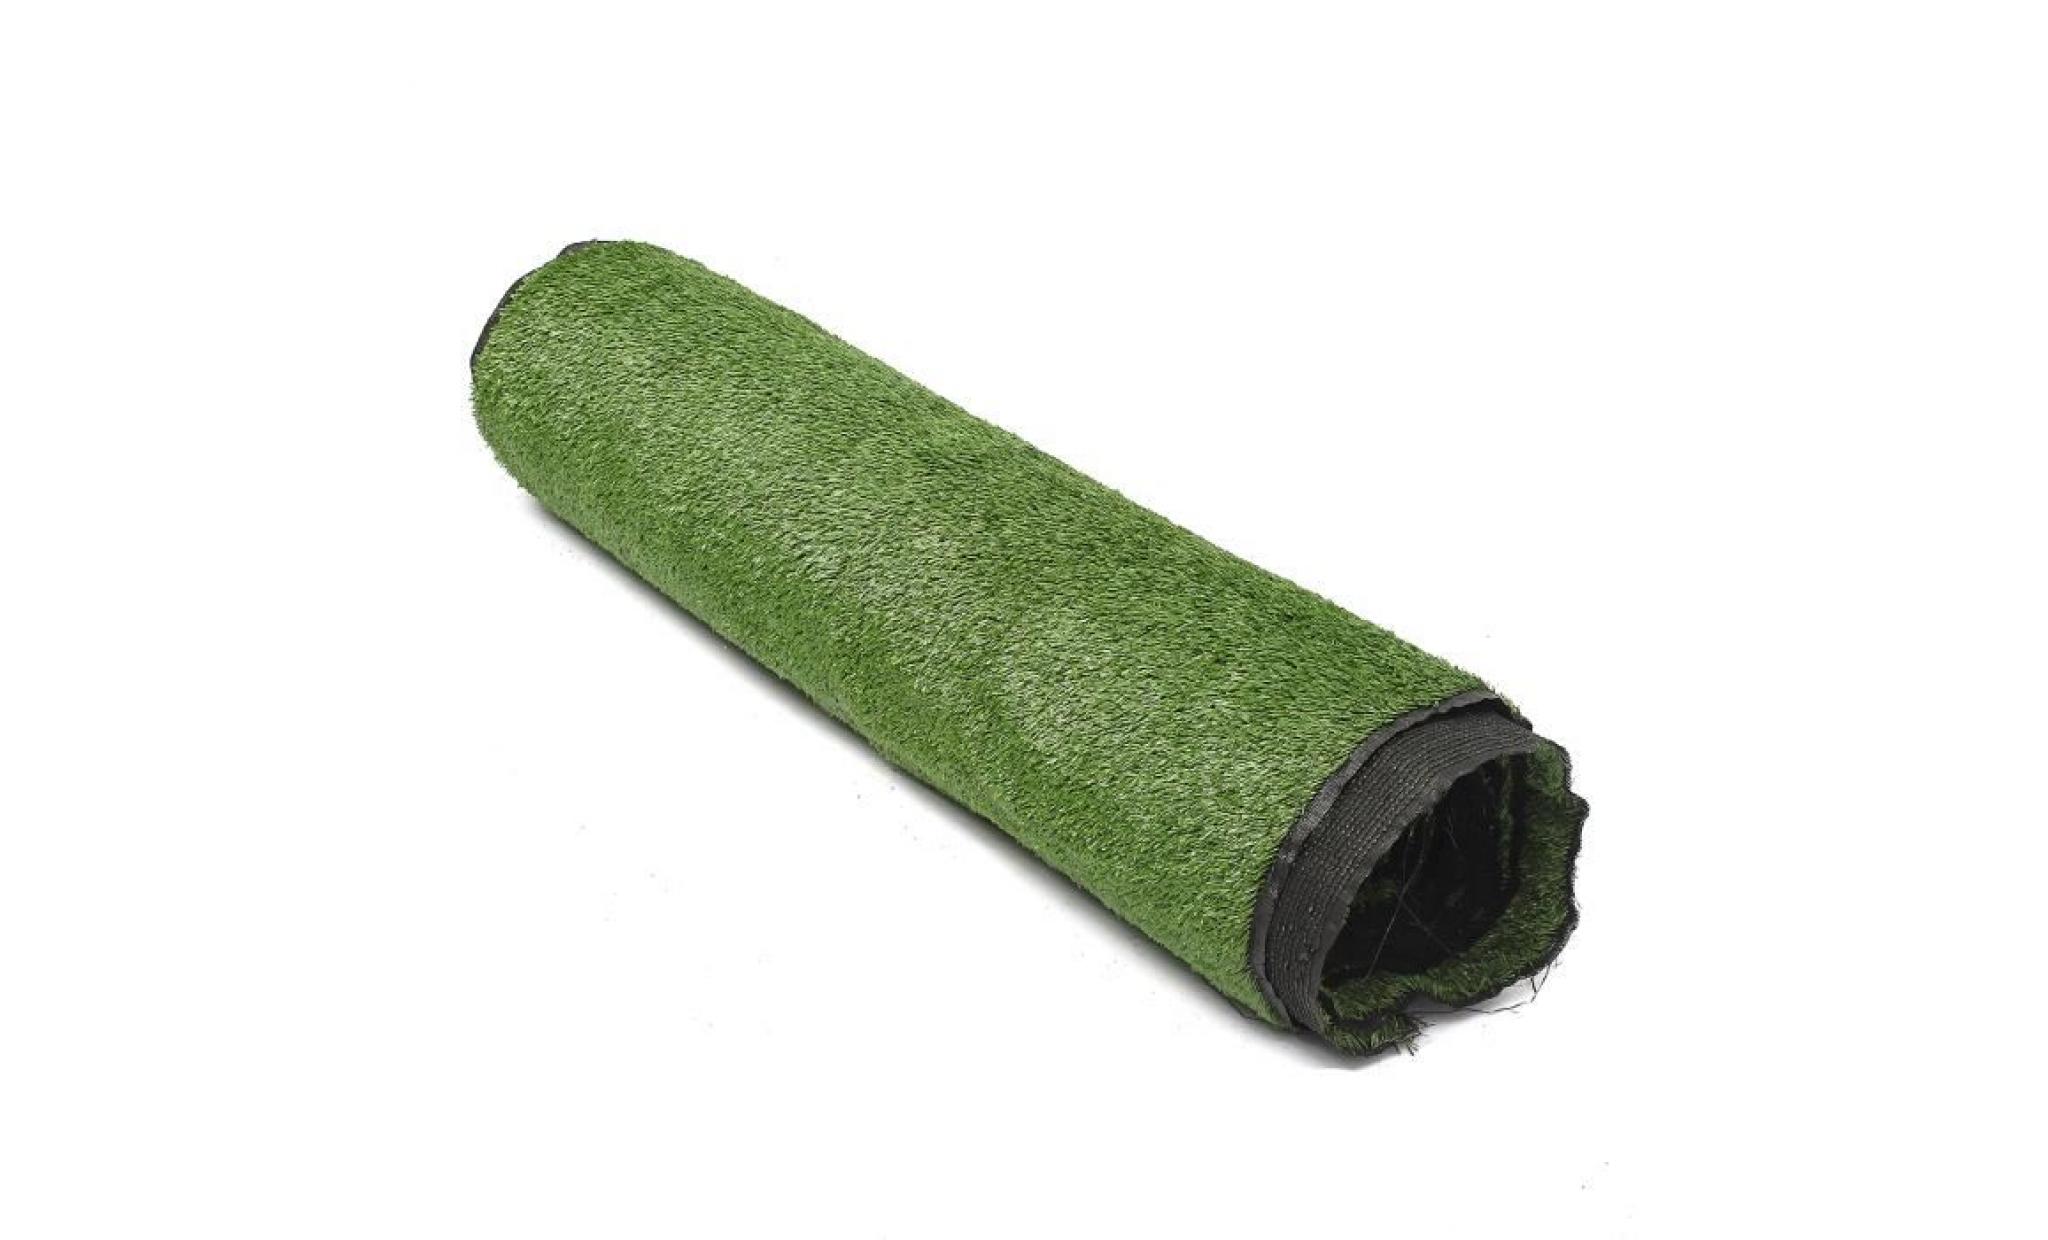 10mm gazon synthétique moquette d'extérieur manteau herbeux artificielle 2mx5m vert foncé pas cher